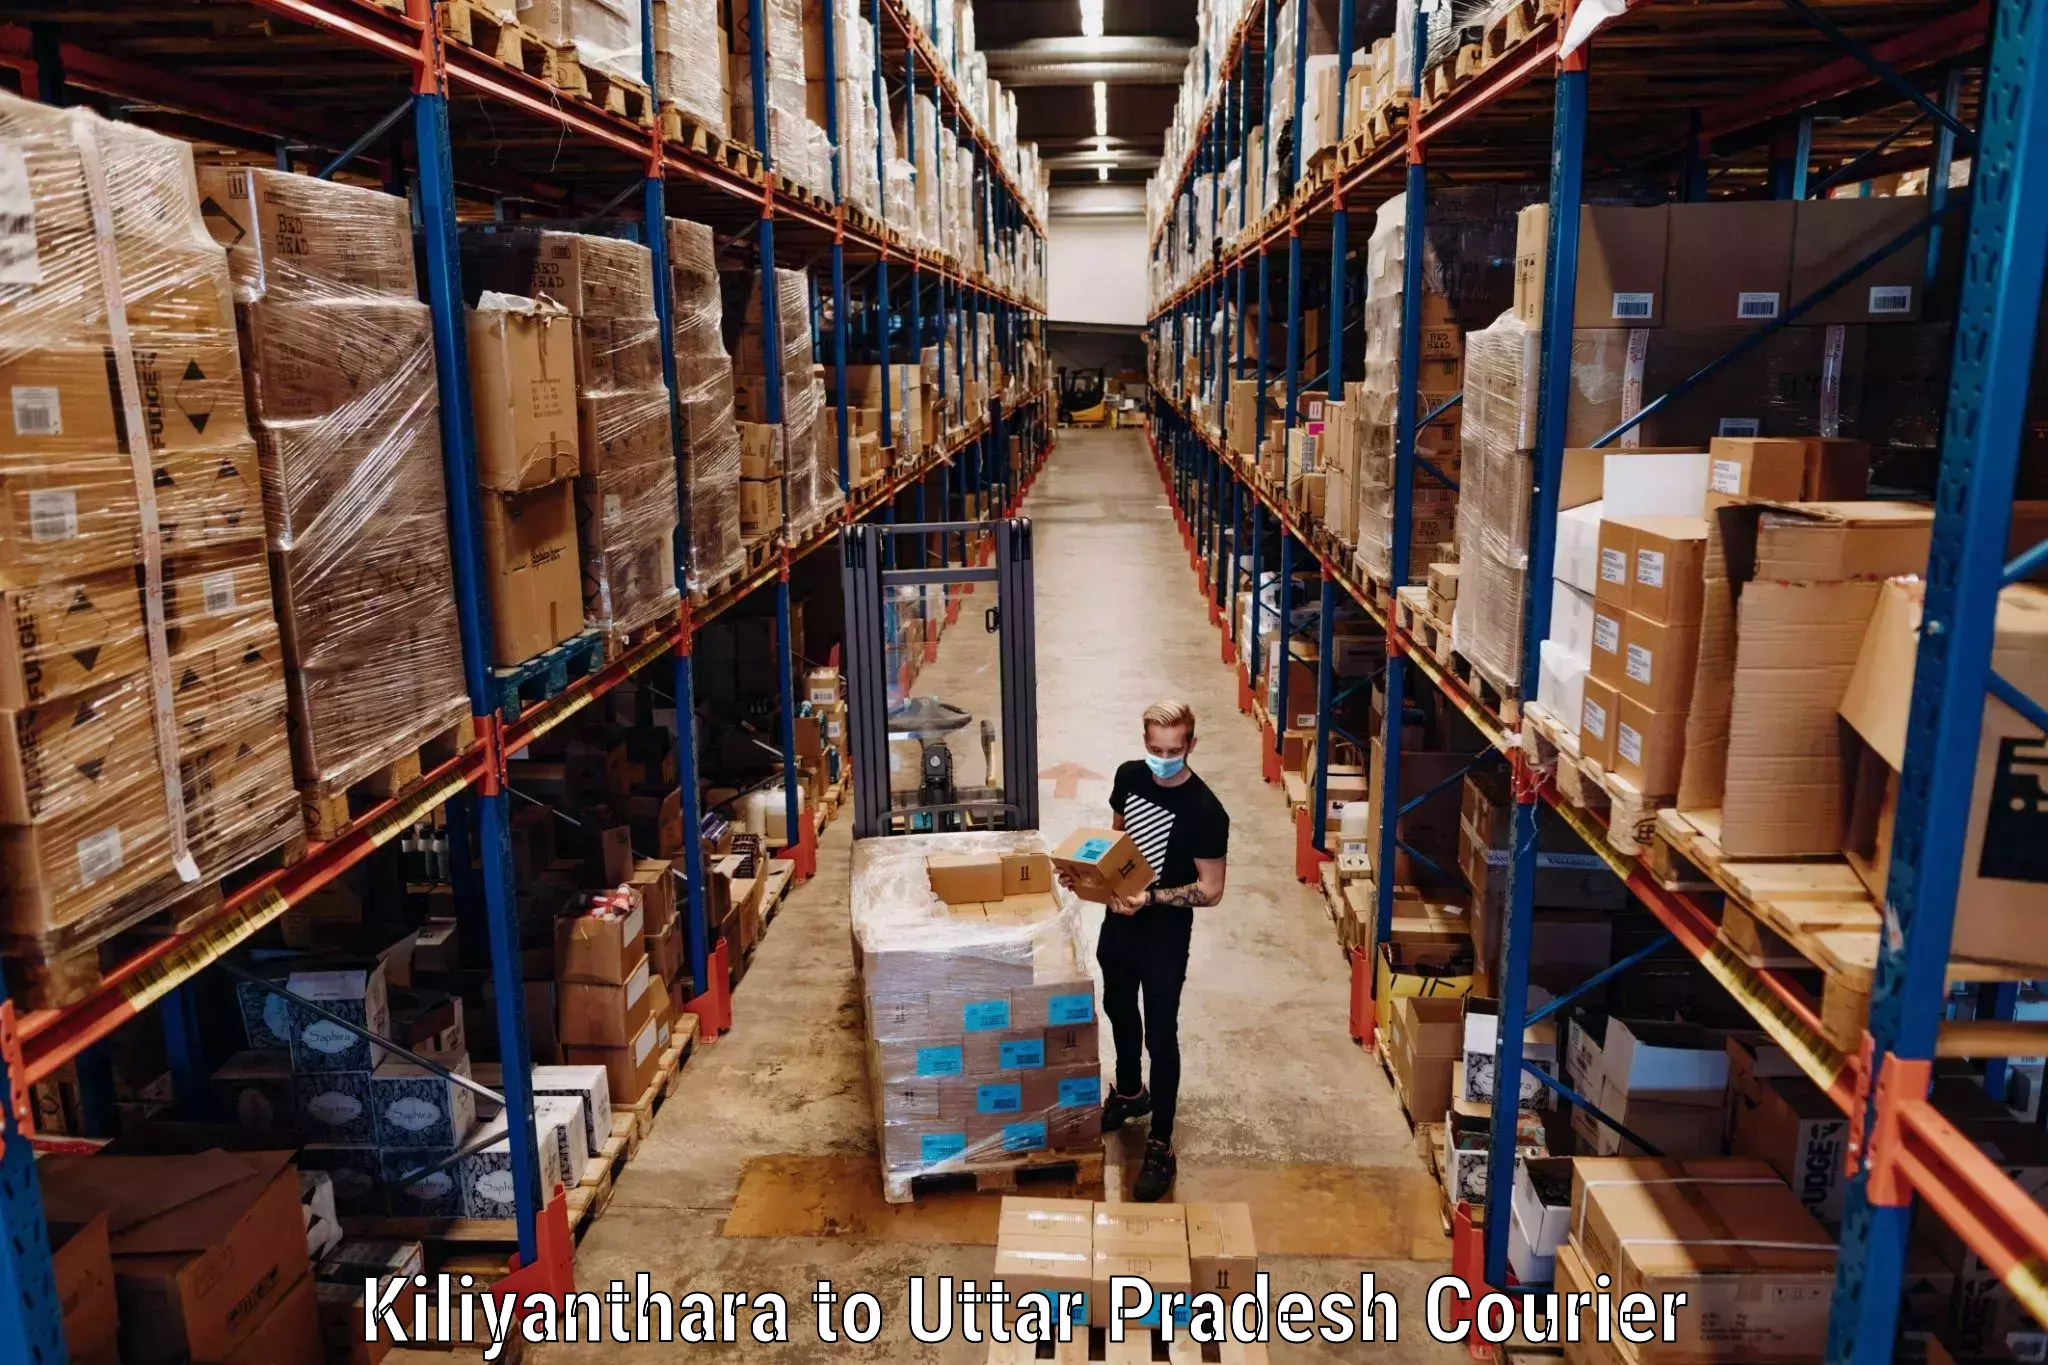 Hassle-free luggage shipping in Kiliyanthara to Uttar Pradesh